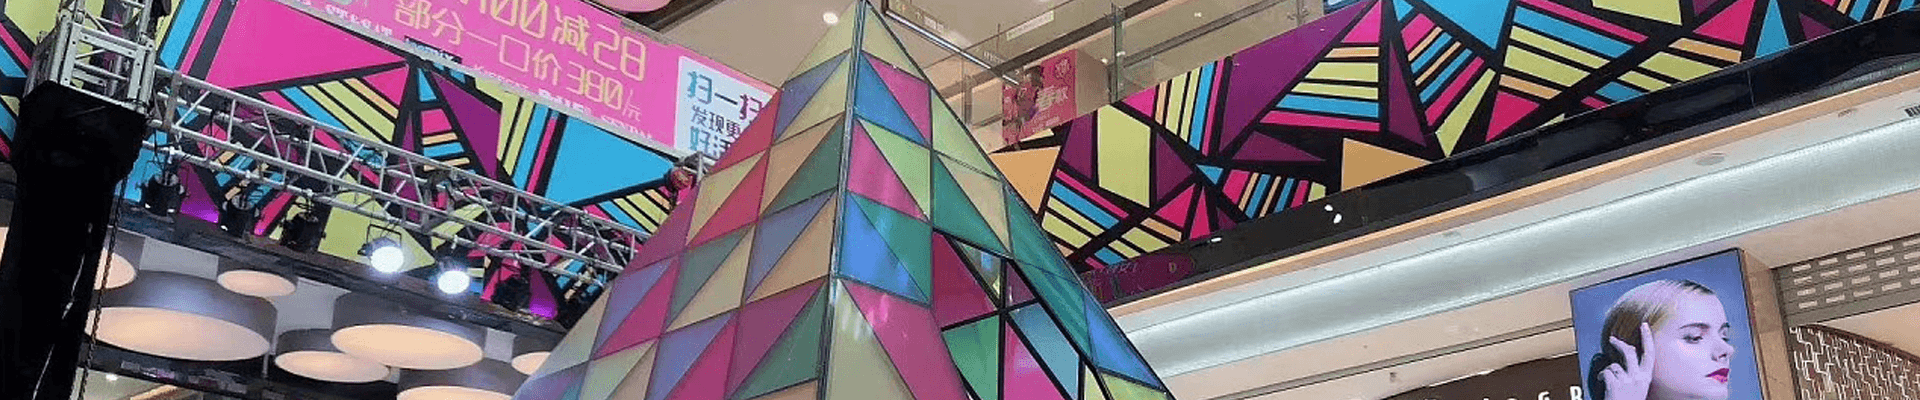 商场商品有机玻璃打造展厅和商品盒子-武汉时代经典